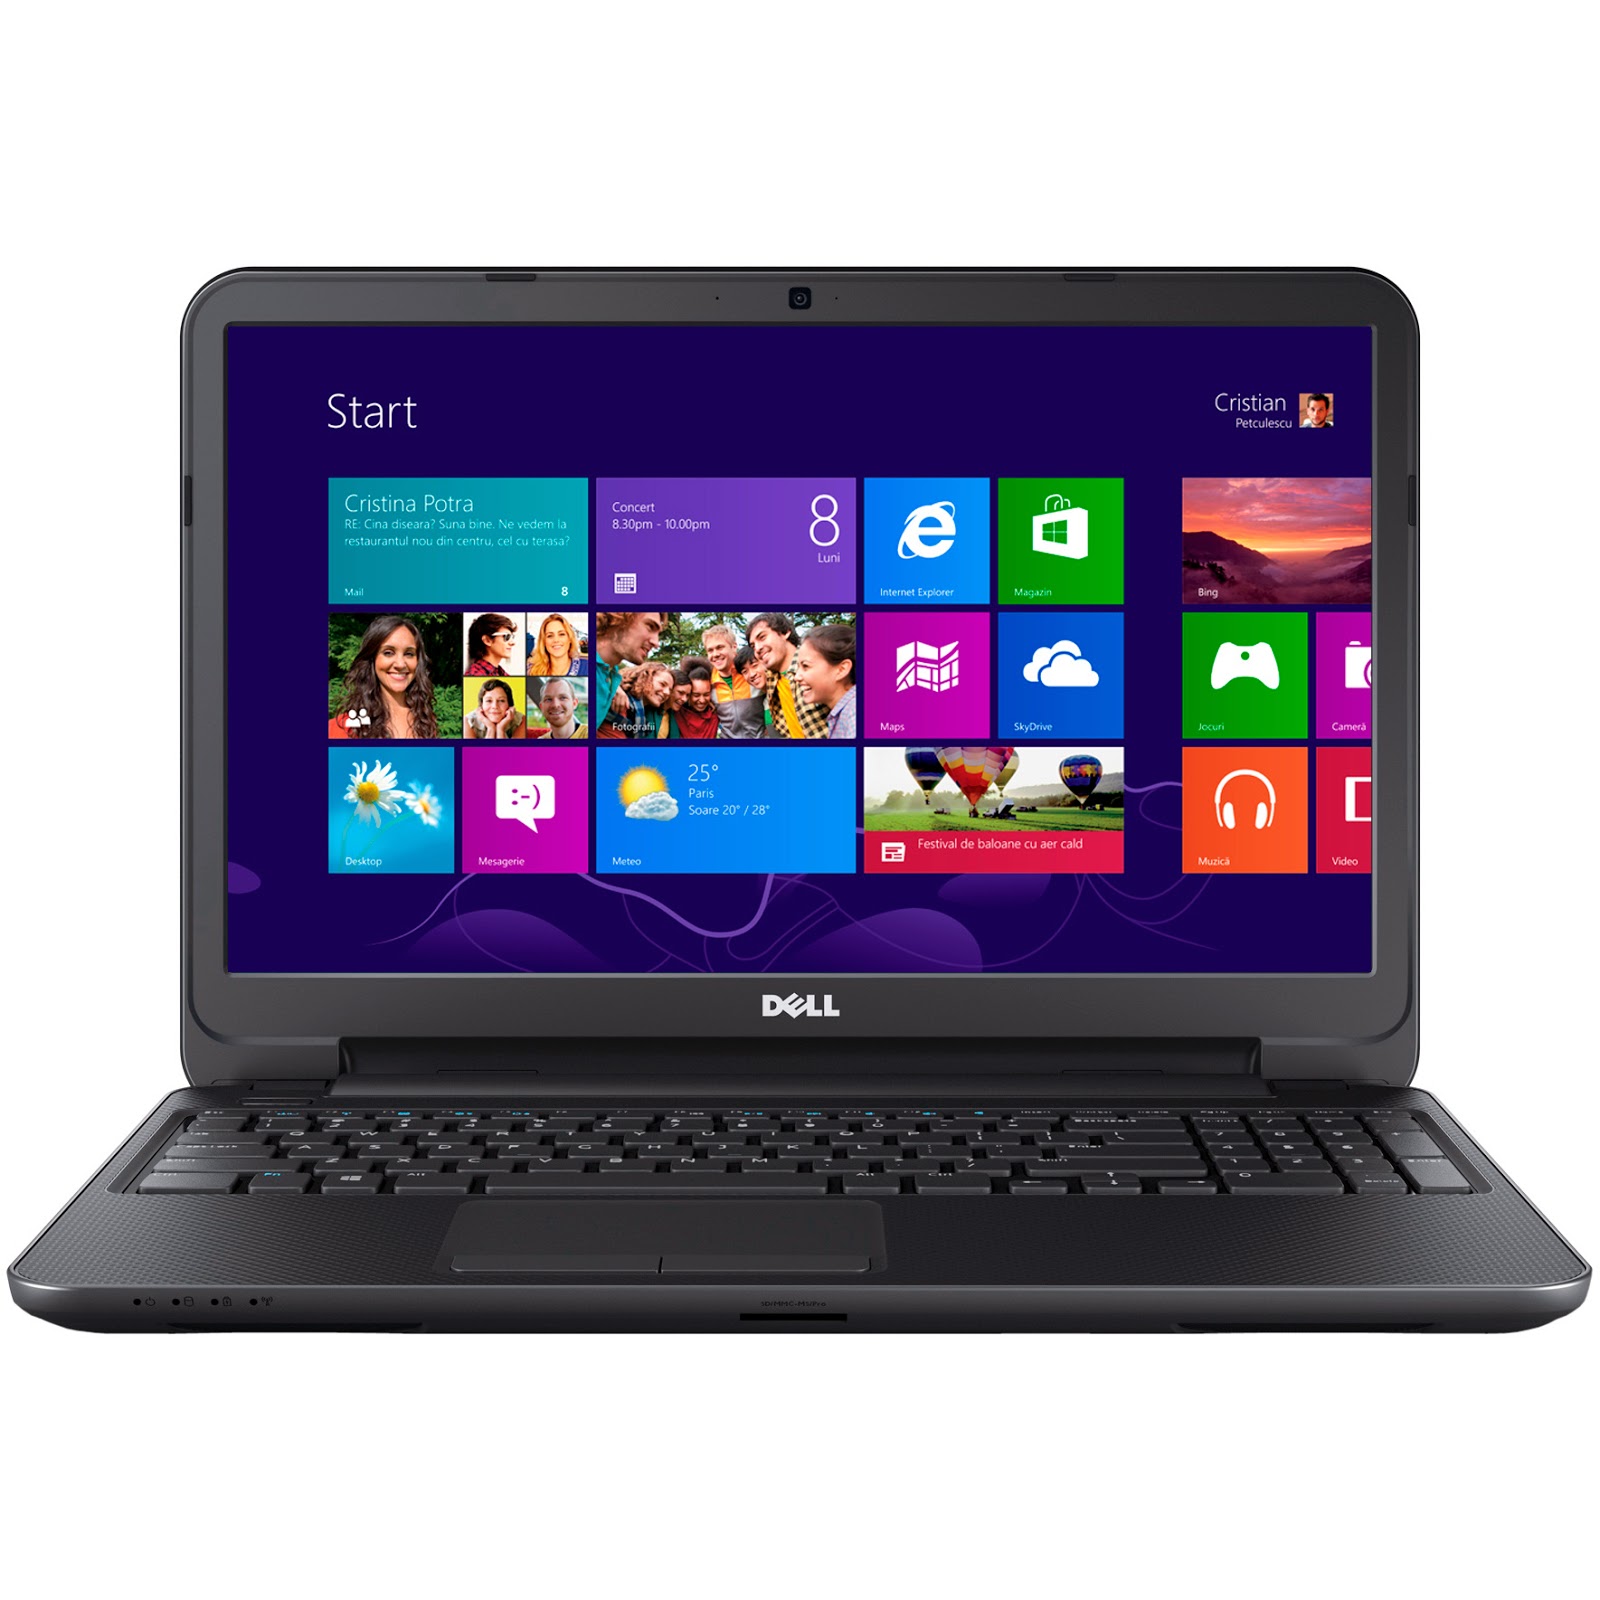 Mua Bán Laptop Dell Inspiron 3537corei3 Mới & Cũ Giá Rẻ Core i3 ~ Thế hệ 4  - (Thời Trang/SiêuMỏng/Giải Trí) - 15-inch